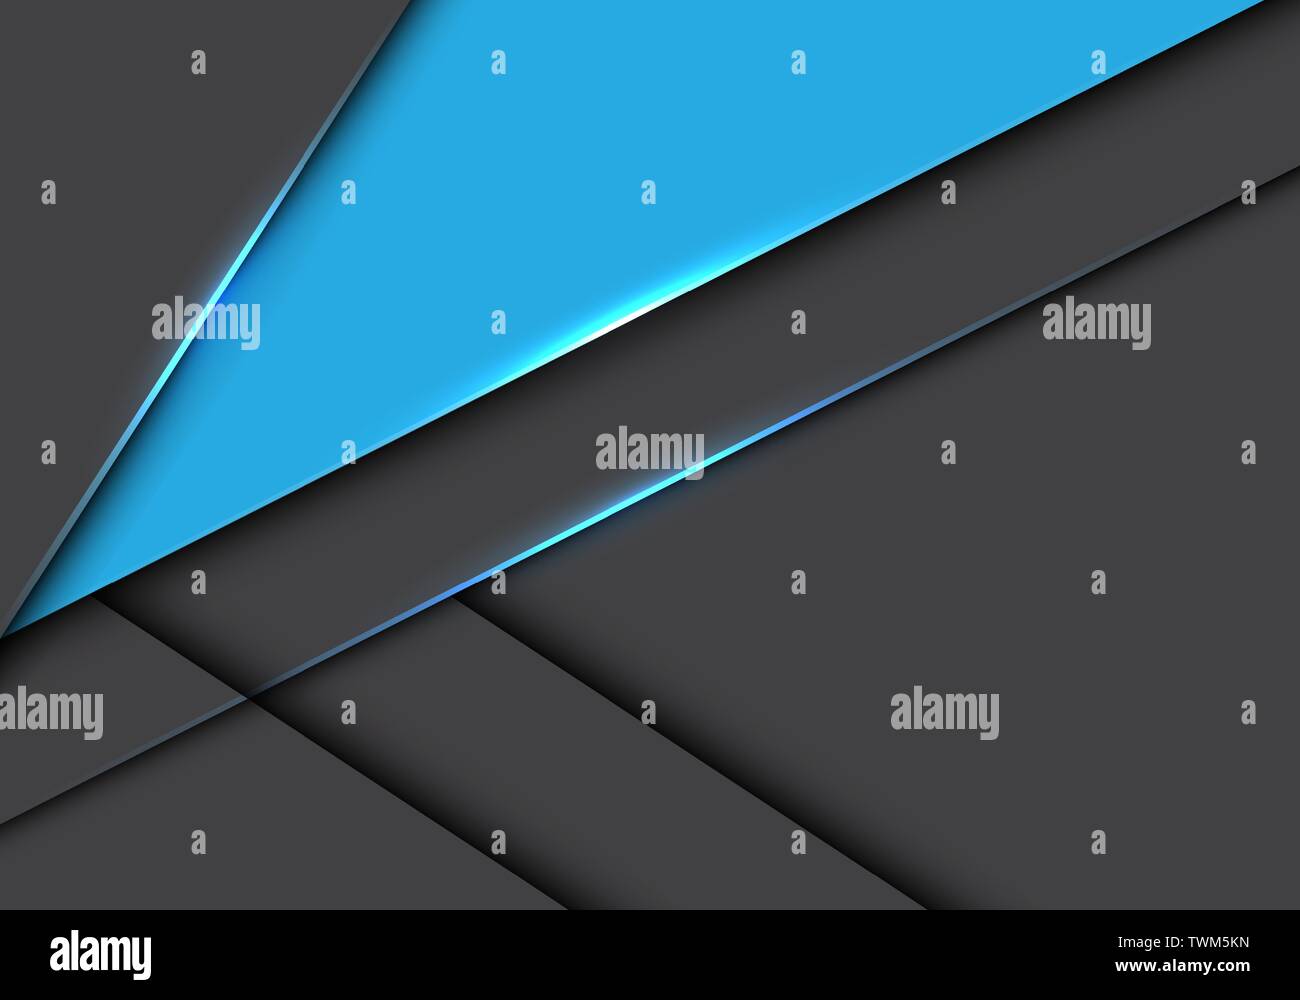 Abstrakt Blau Dreieck auf grau metallic überlappen Design moderne futuristischen Hintergrund Vector Illustration. Stock Vektor